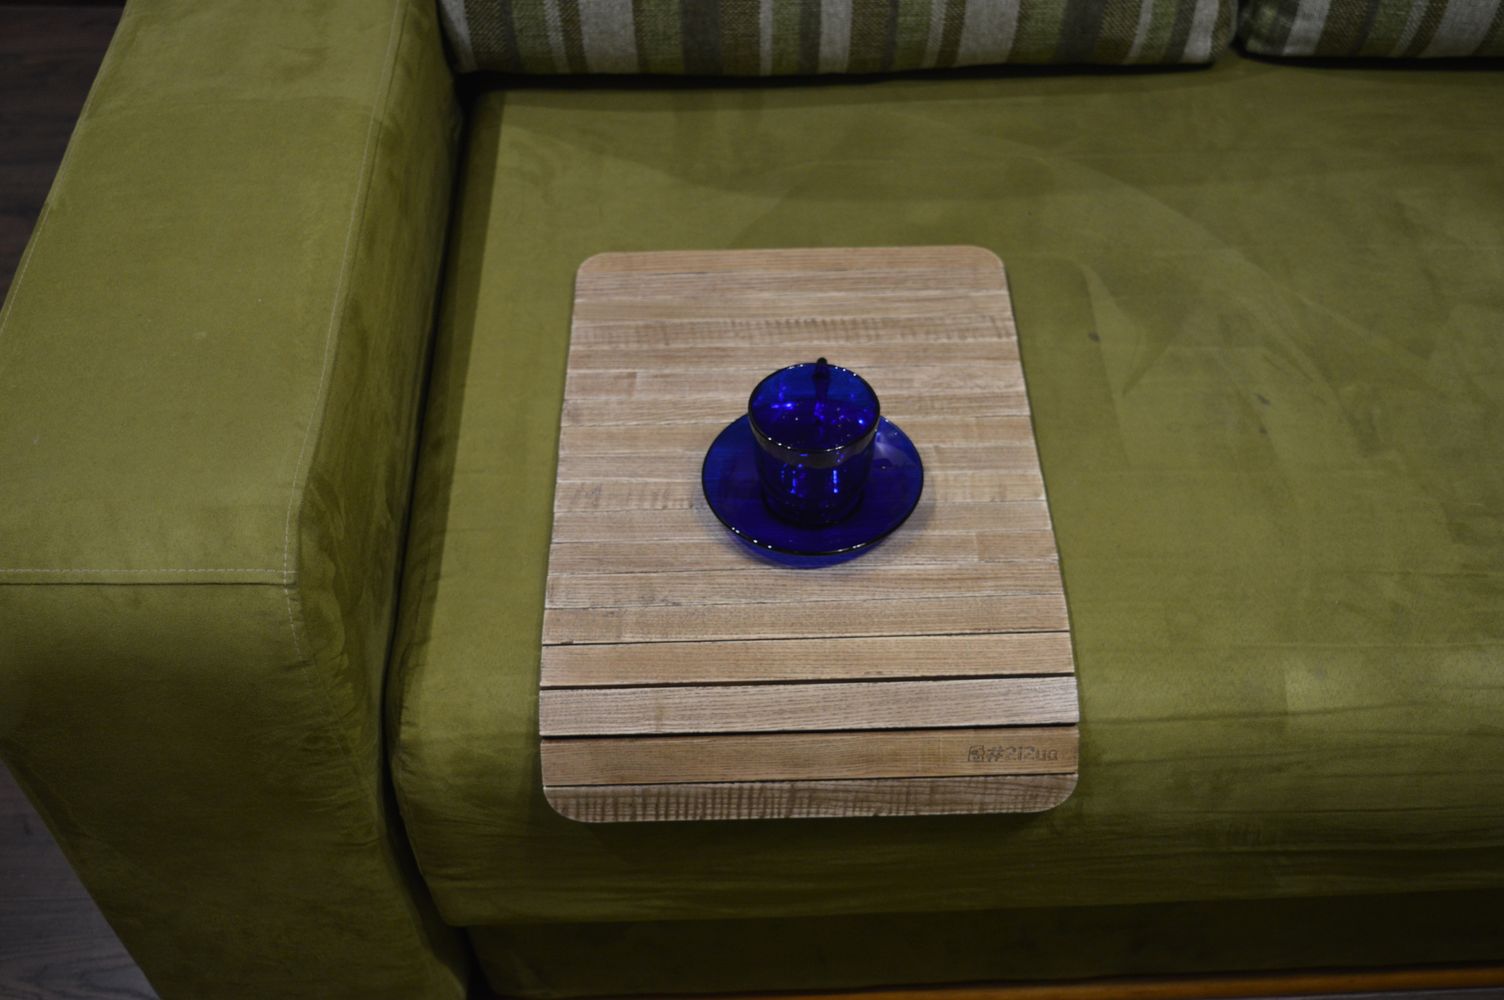 Деревянная накладка, столик, коврик на подлокотник дивана( винтаж) #2i2ua